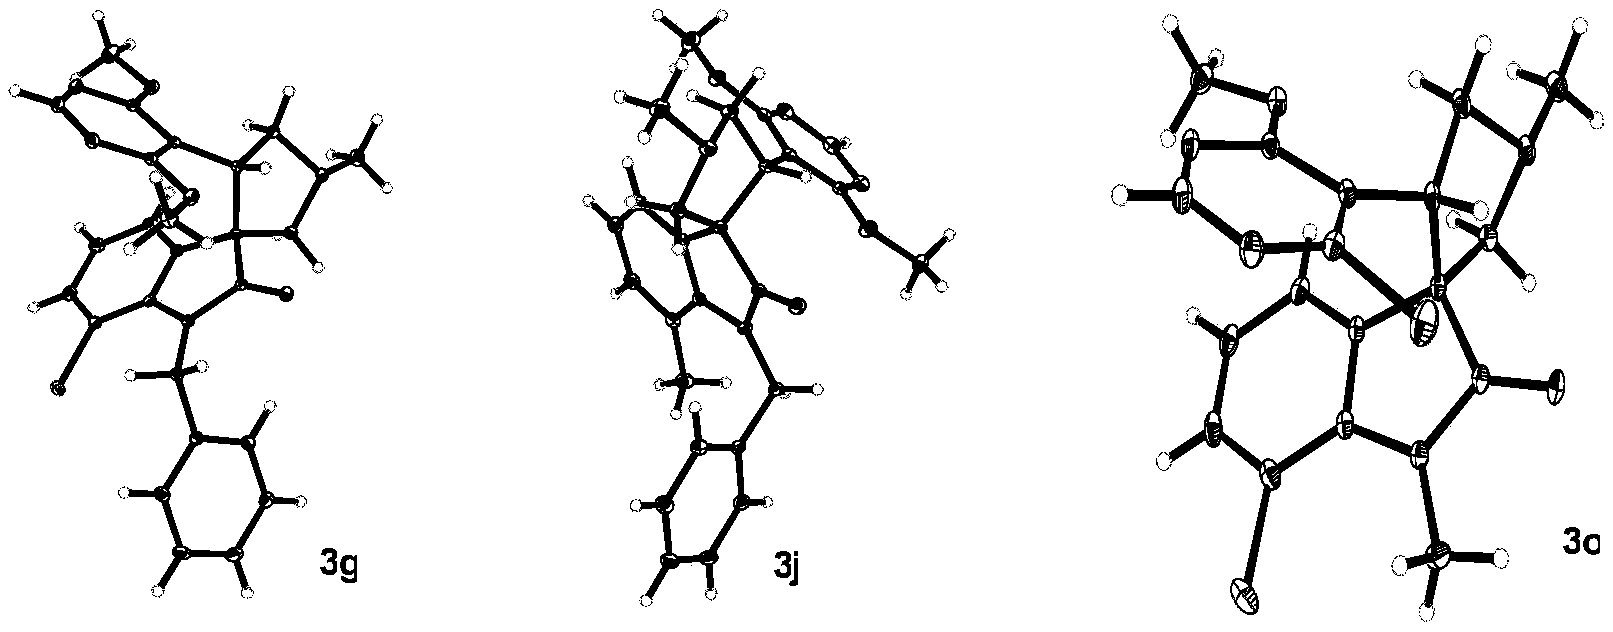 烷氧基嘧啶拼接3-吡咯螺环氧化吲哚衍生物及其制备方法及应用